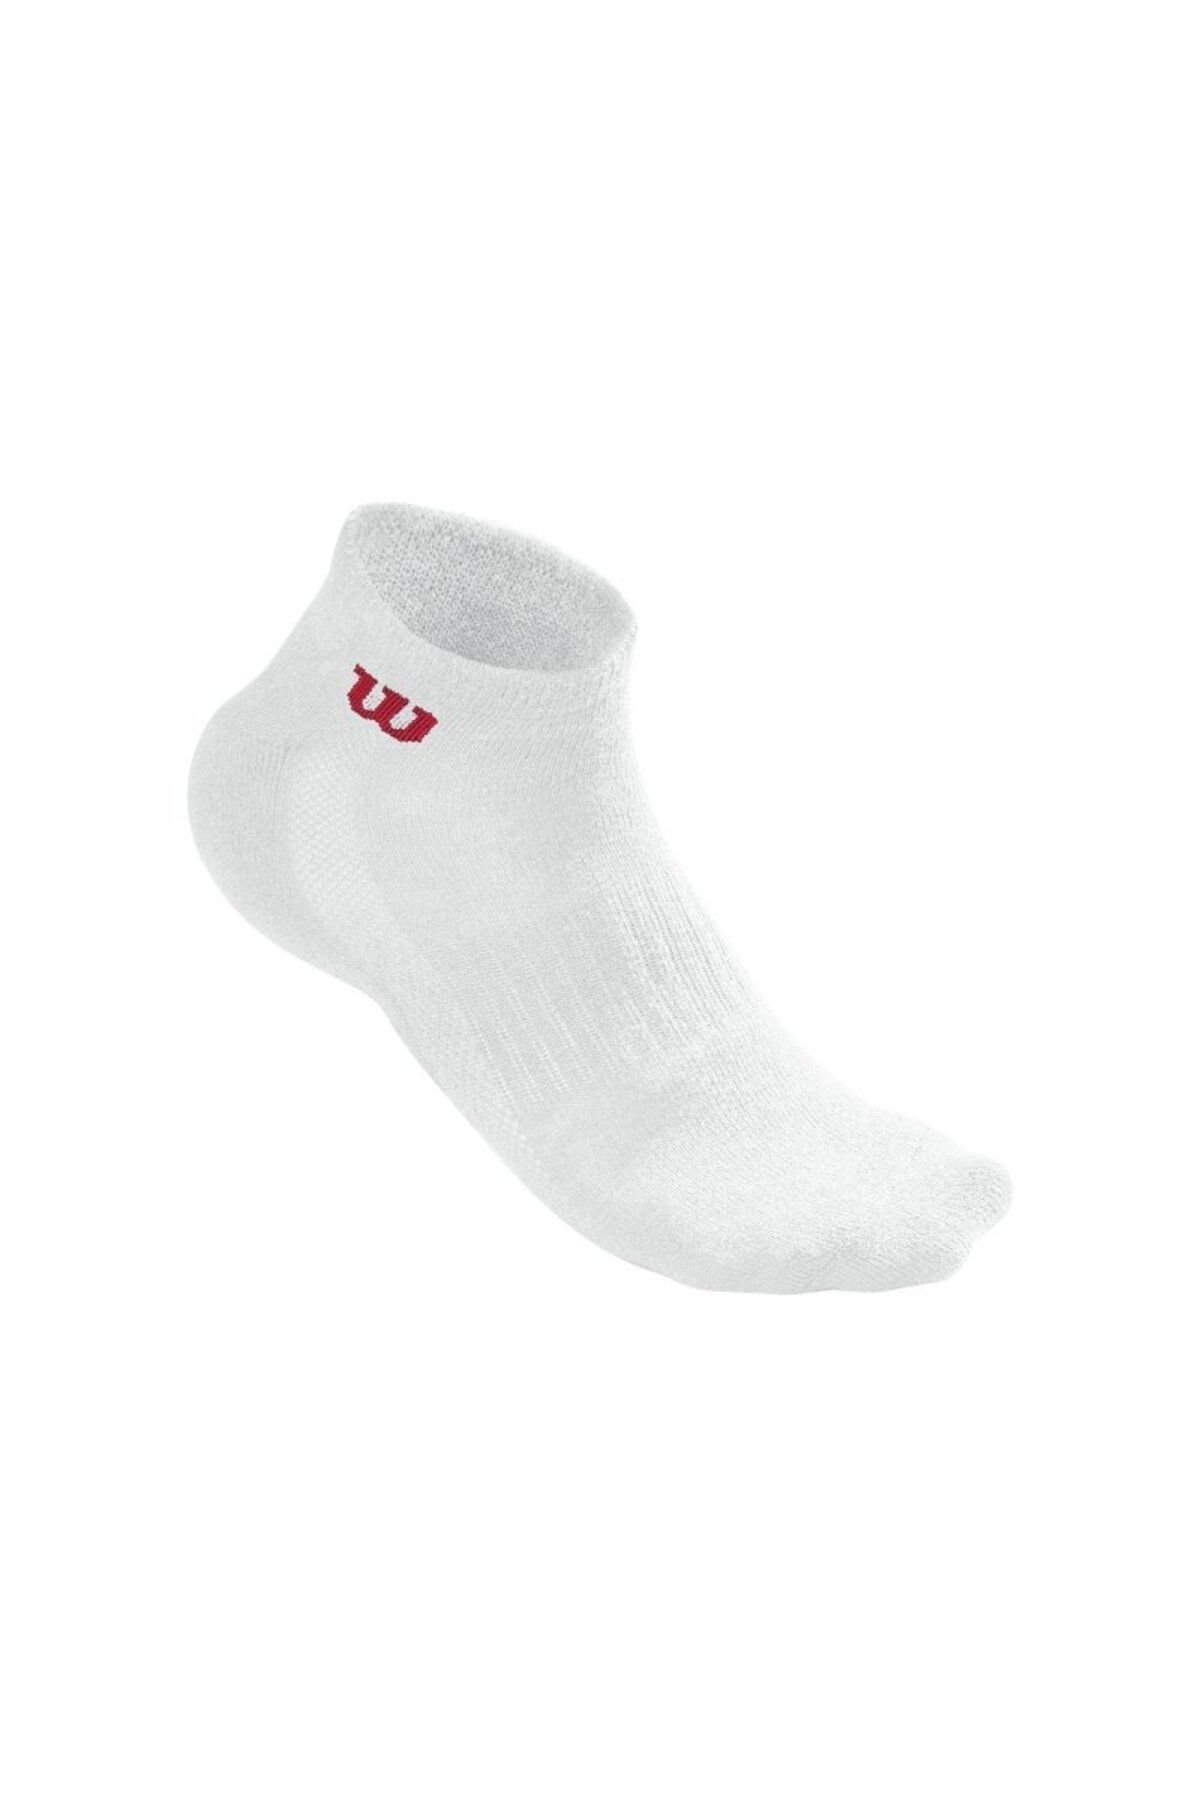 Wilson Quarter Beyaz Çorap Wra512700